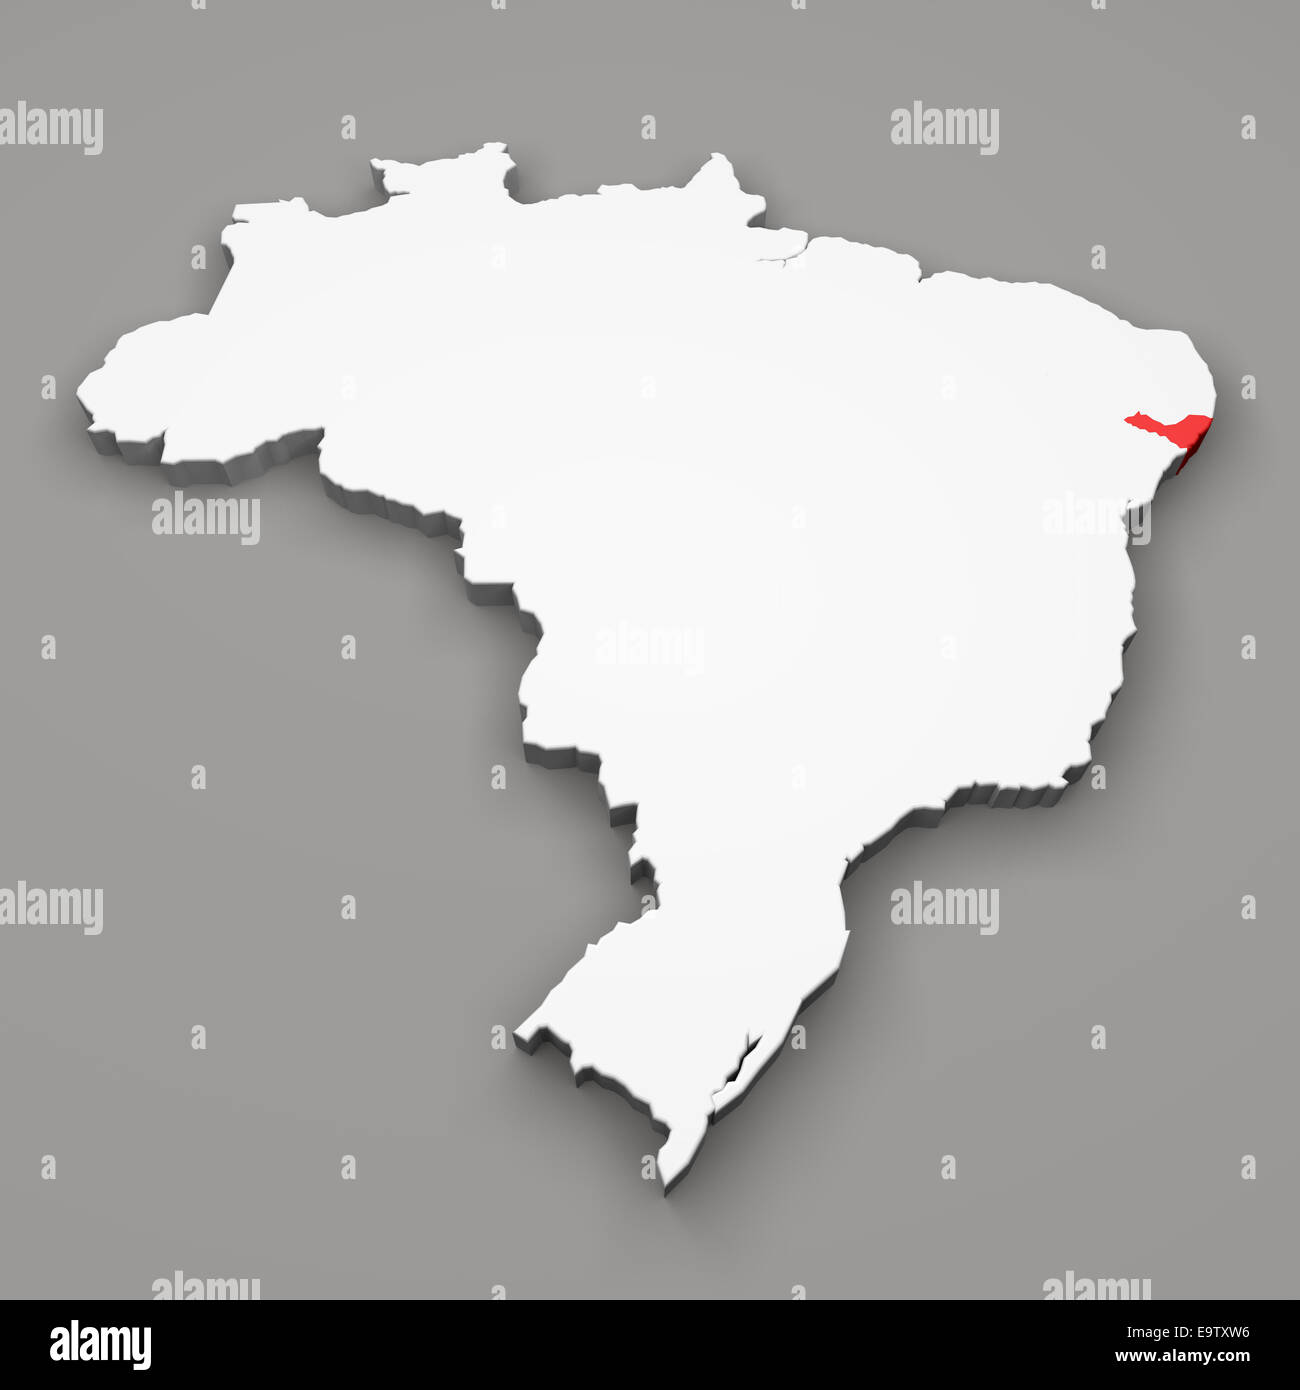 Staates Alagoas auf Karte von Brasilien auf grauem Hintergrund Stockfoto